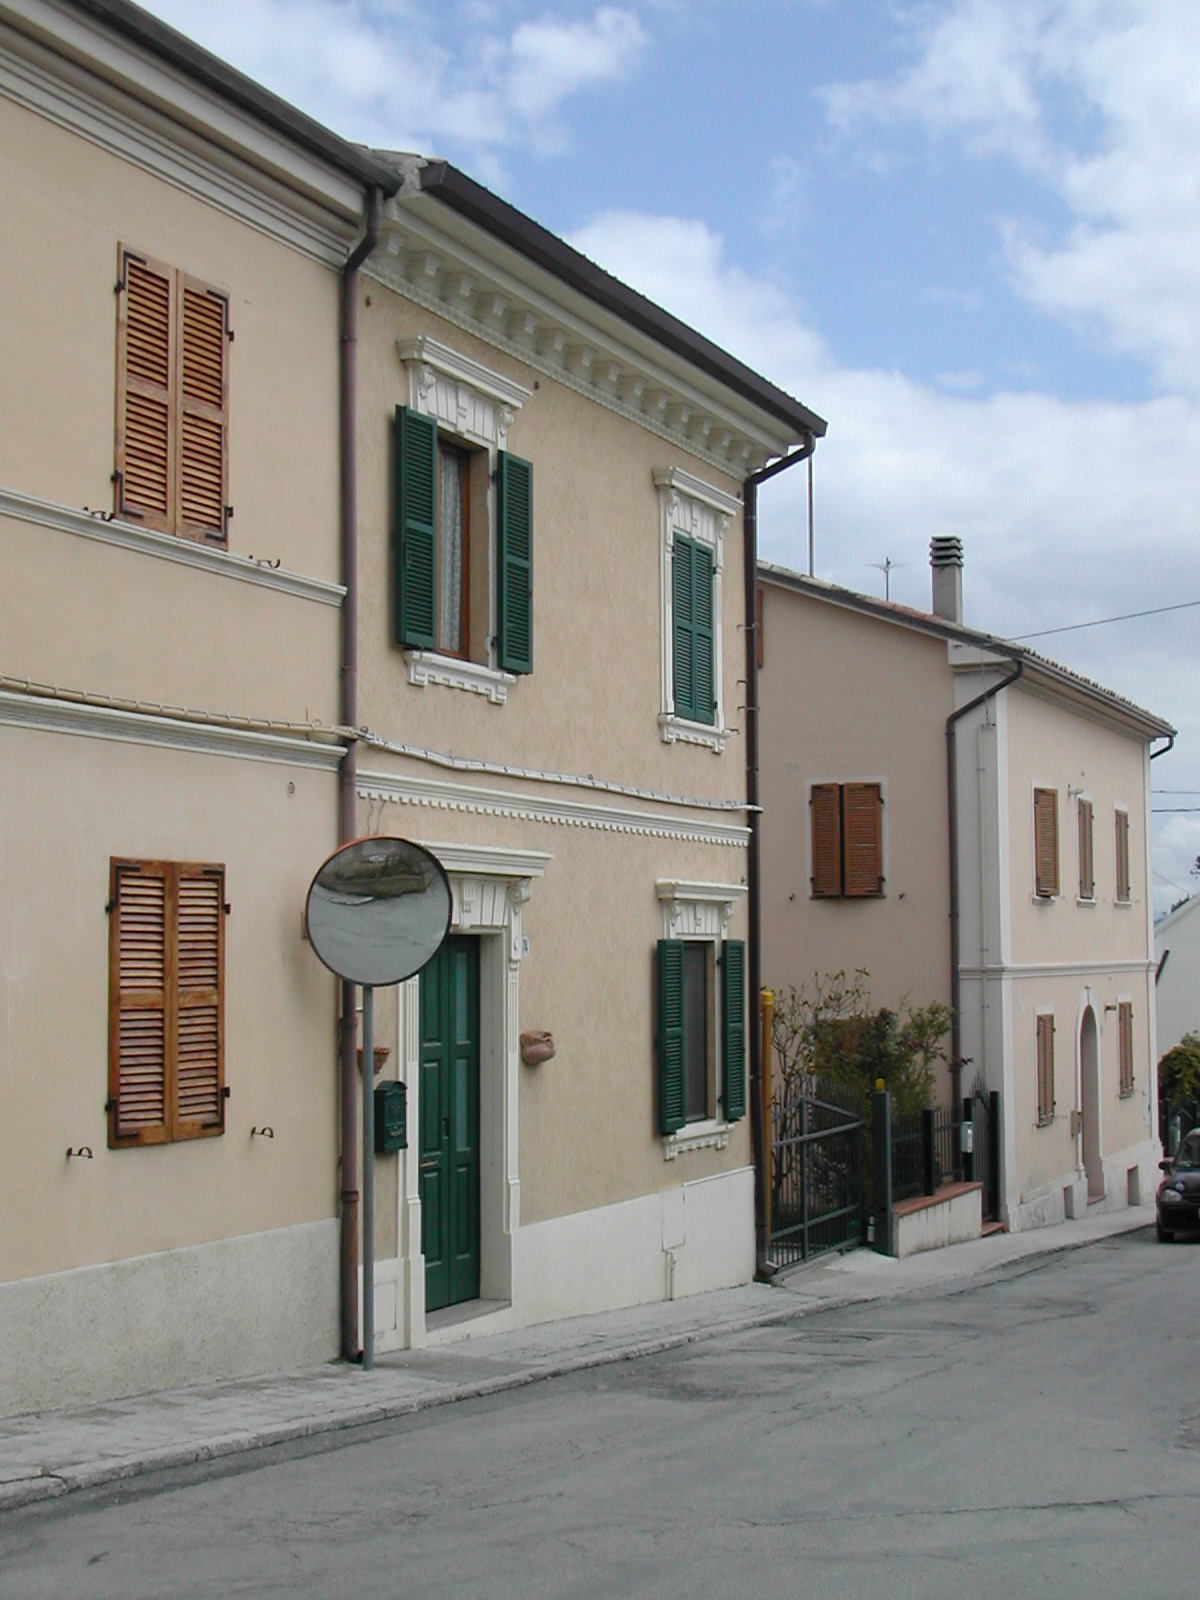 Palazzina d'abitazione (palazzina, d'abitazione) - Montemarciano (AN) 